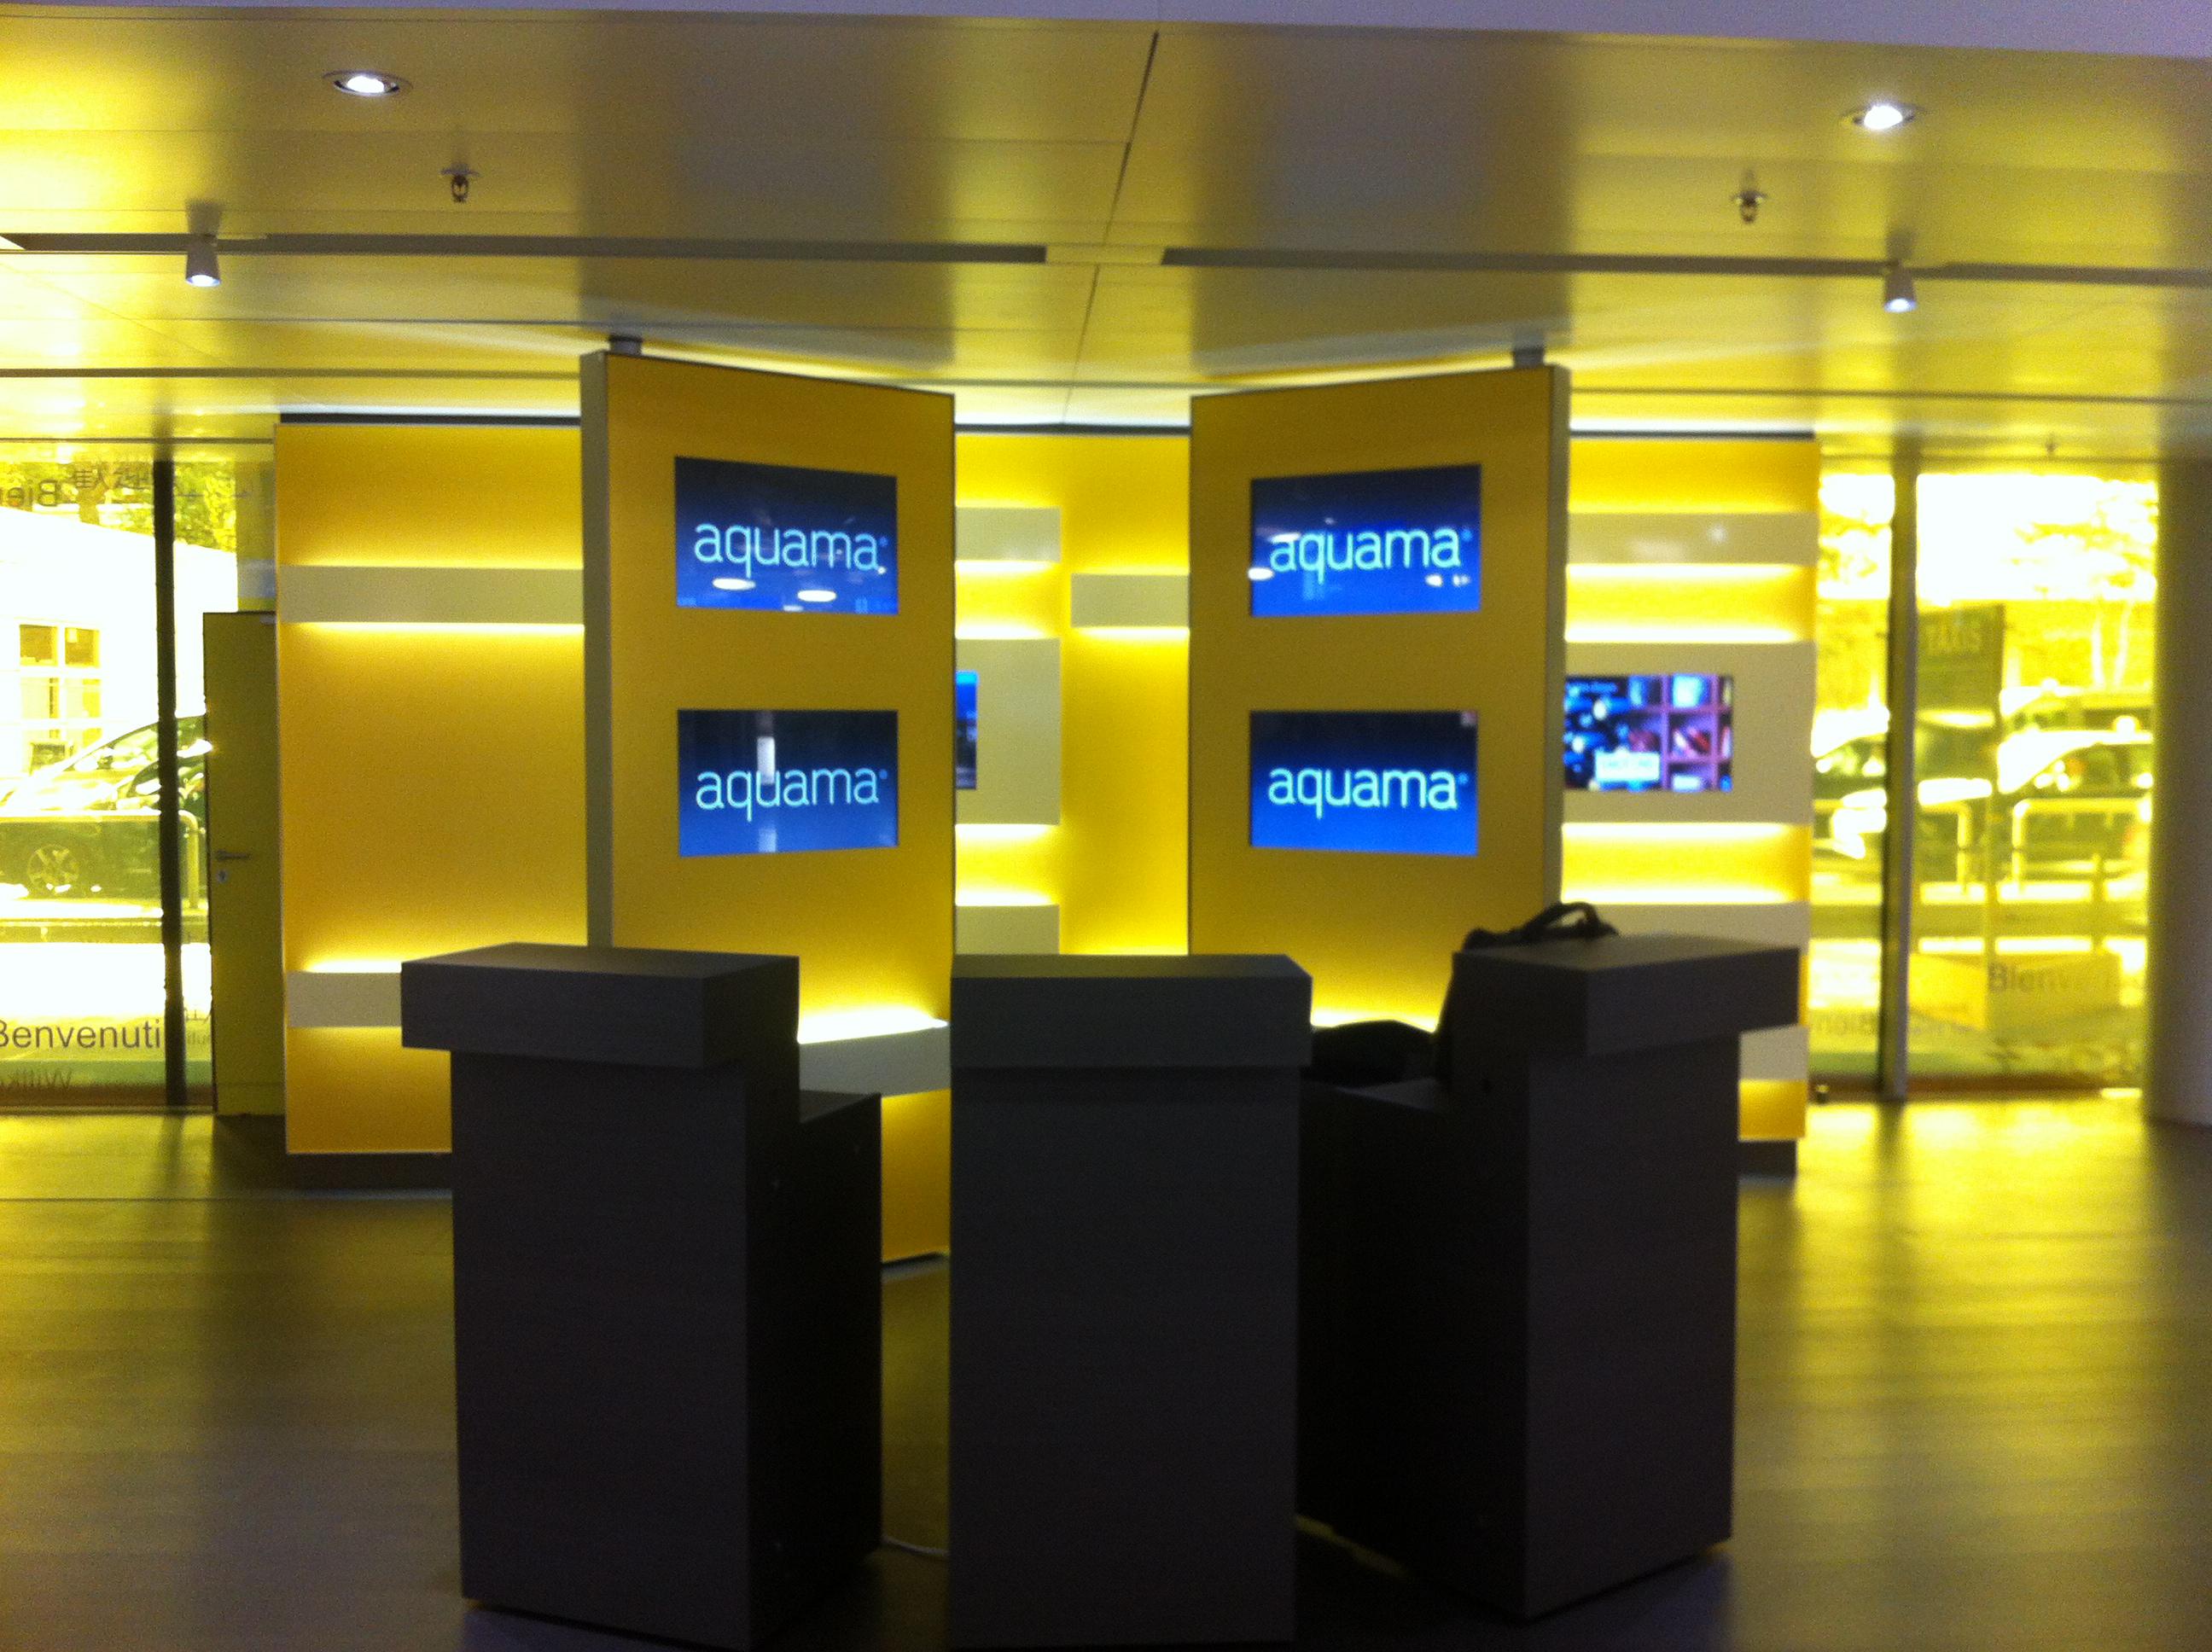 aquama displays on screen at Geneva Airport